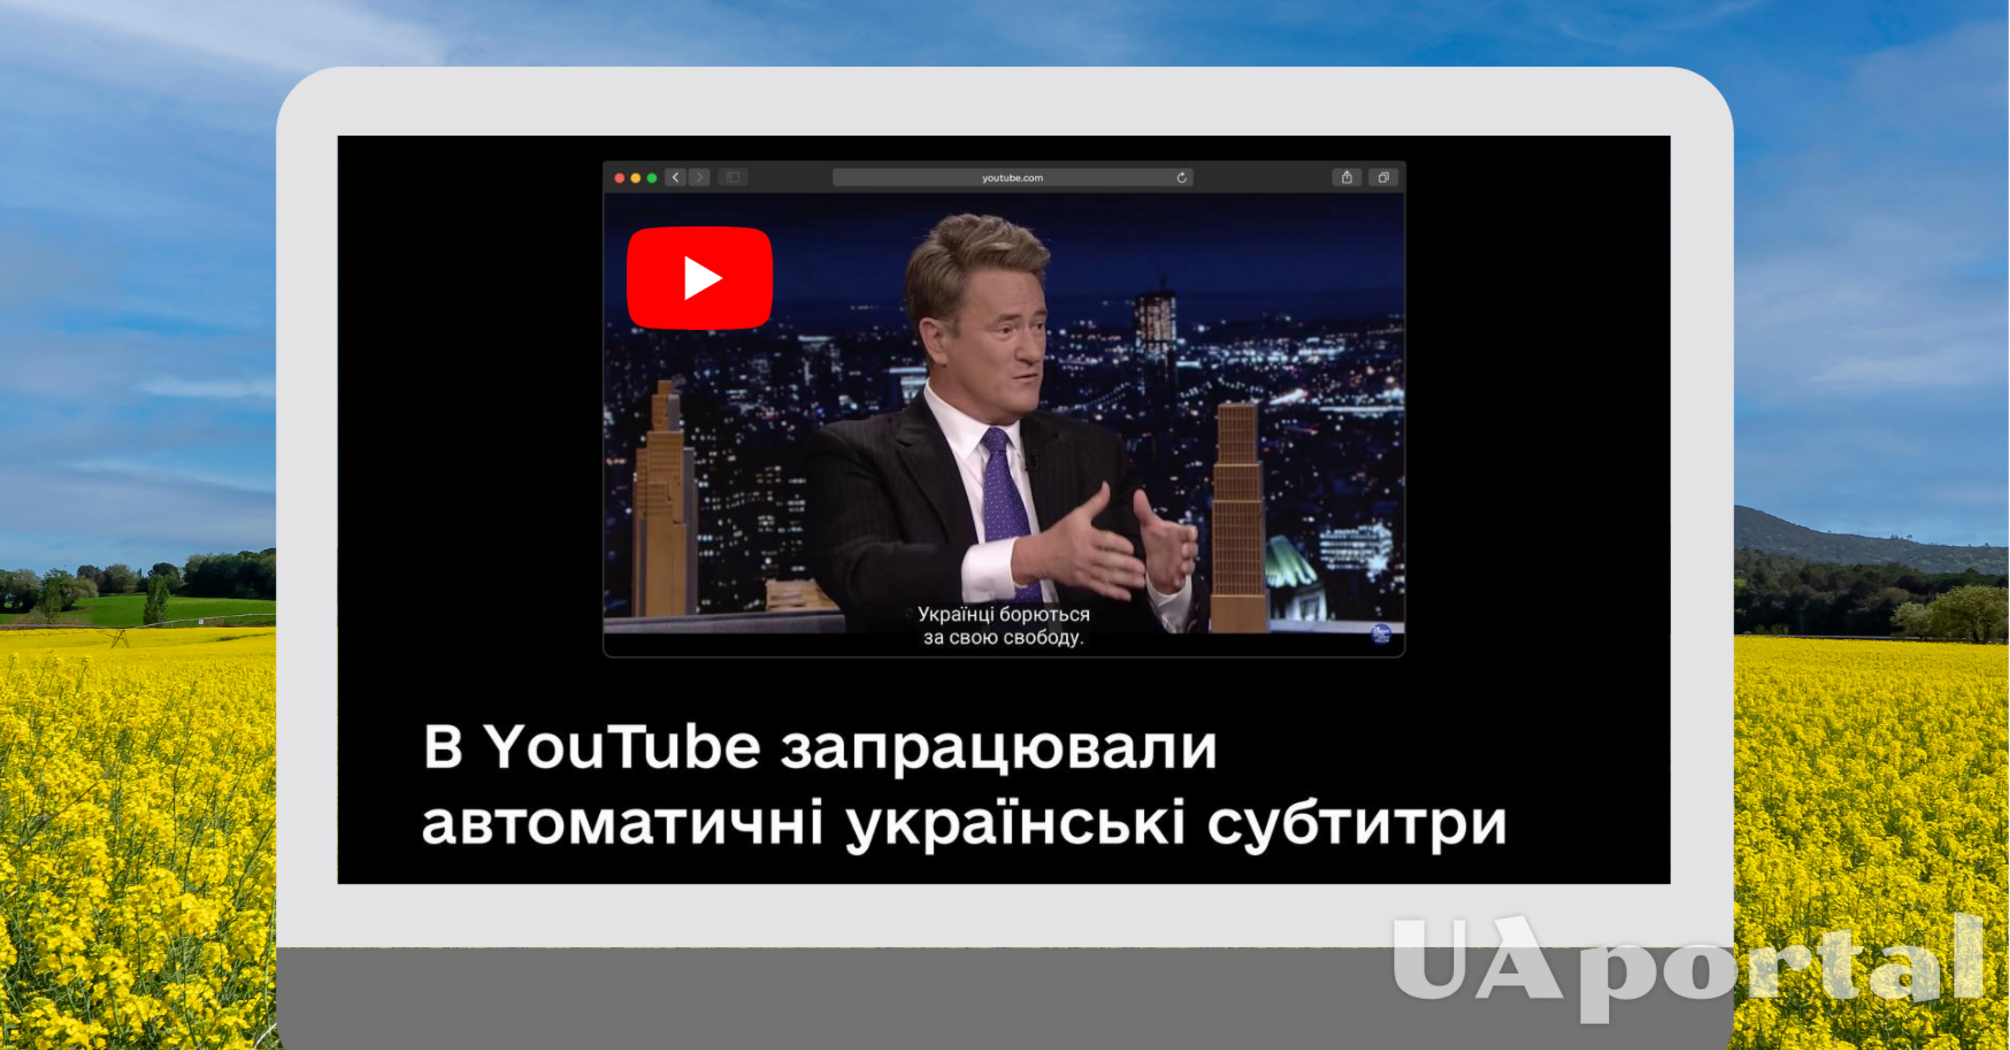 В YouTube з'явилися автоматичні українські субтитри. Як увімкнути функцію